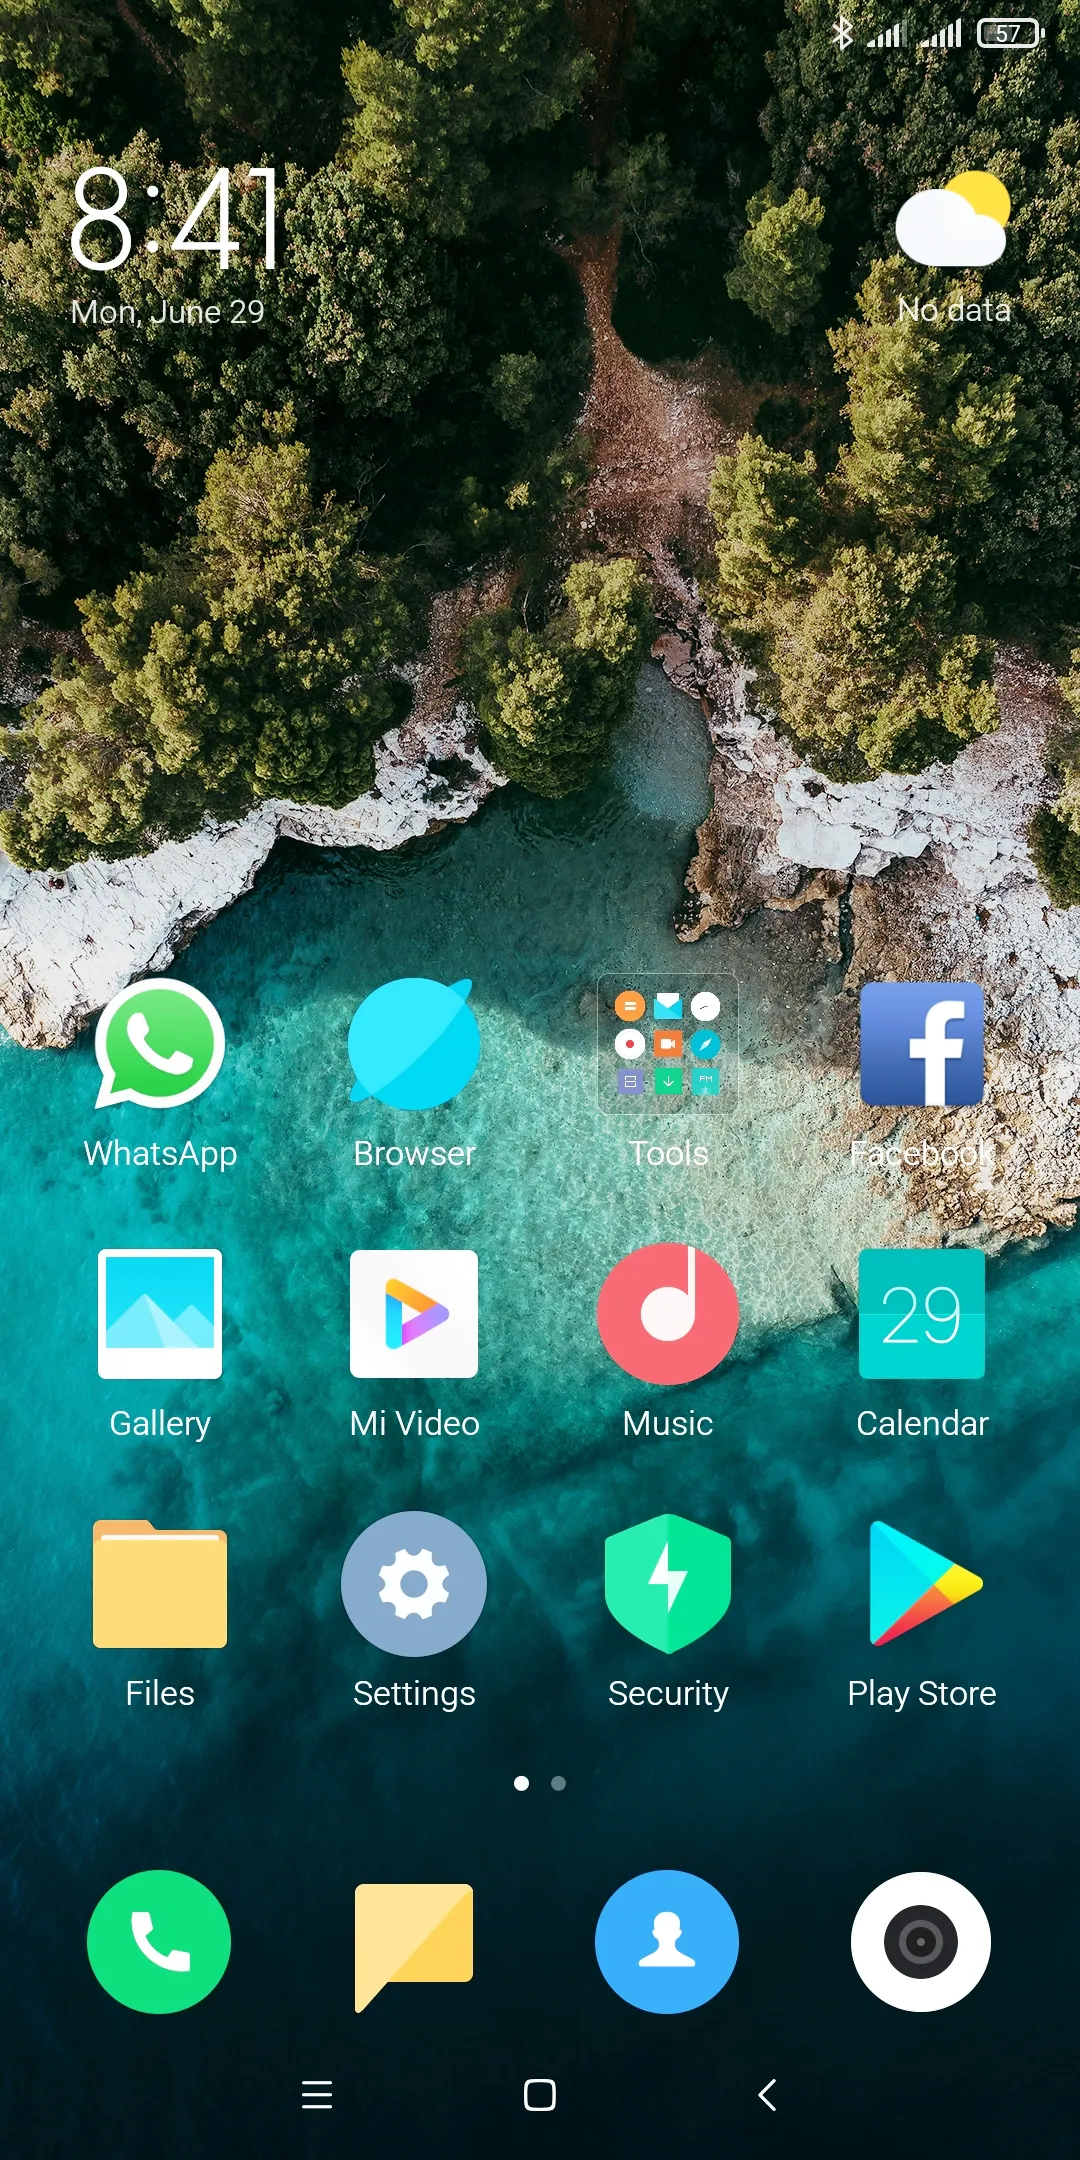 Xiaomi Redmi Note 5 Pro (Global Version) in Lush Condition - photo 3